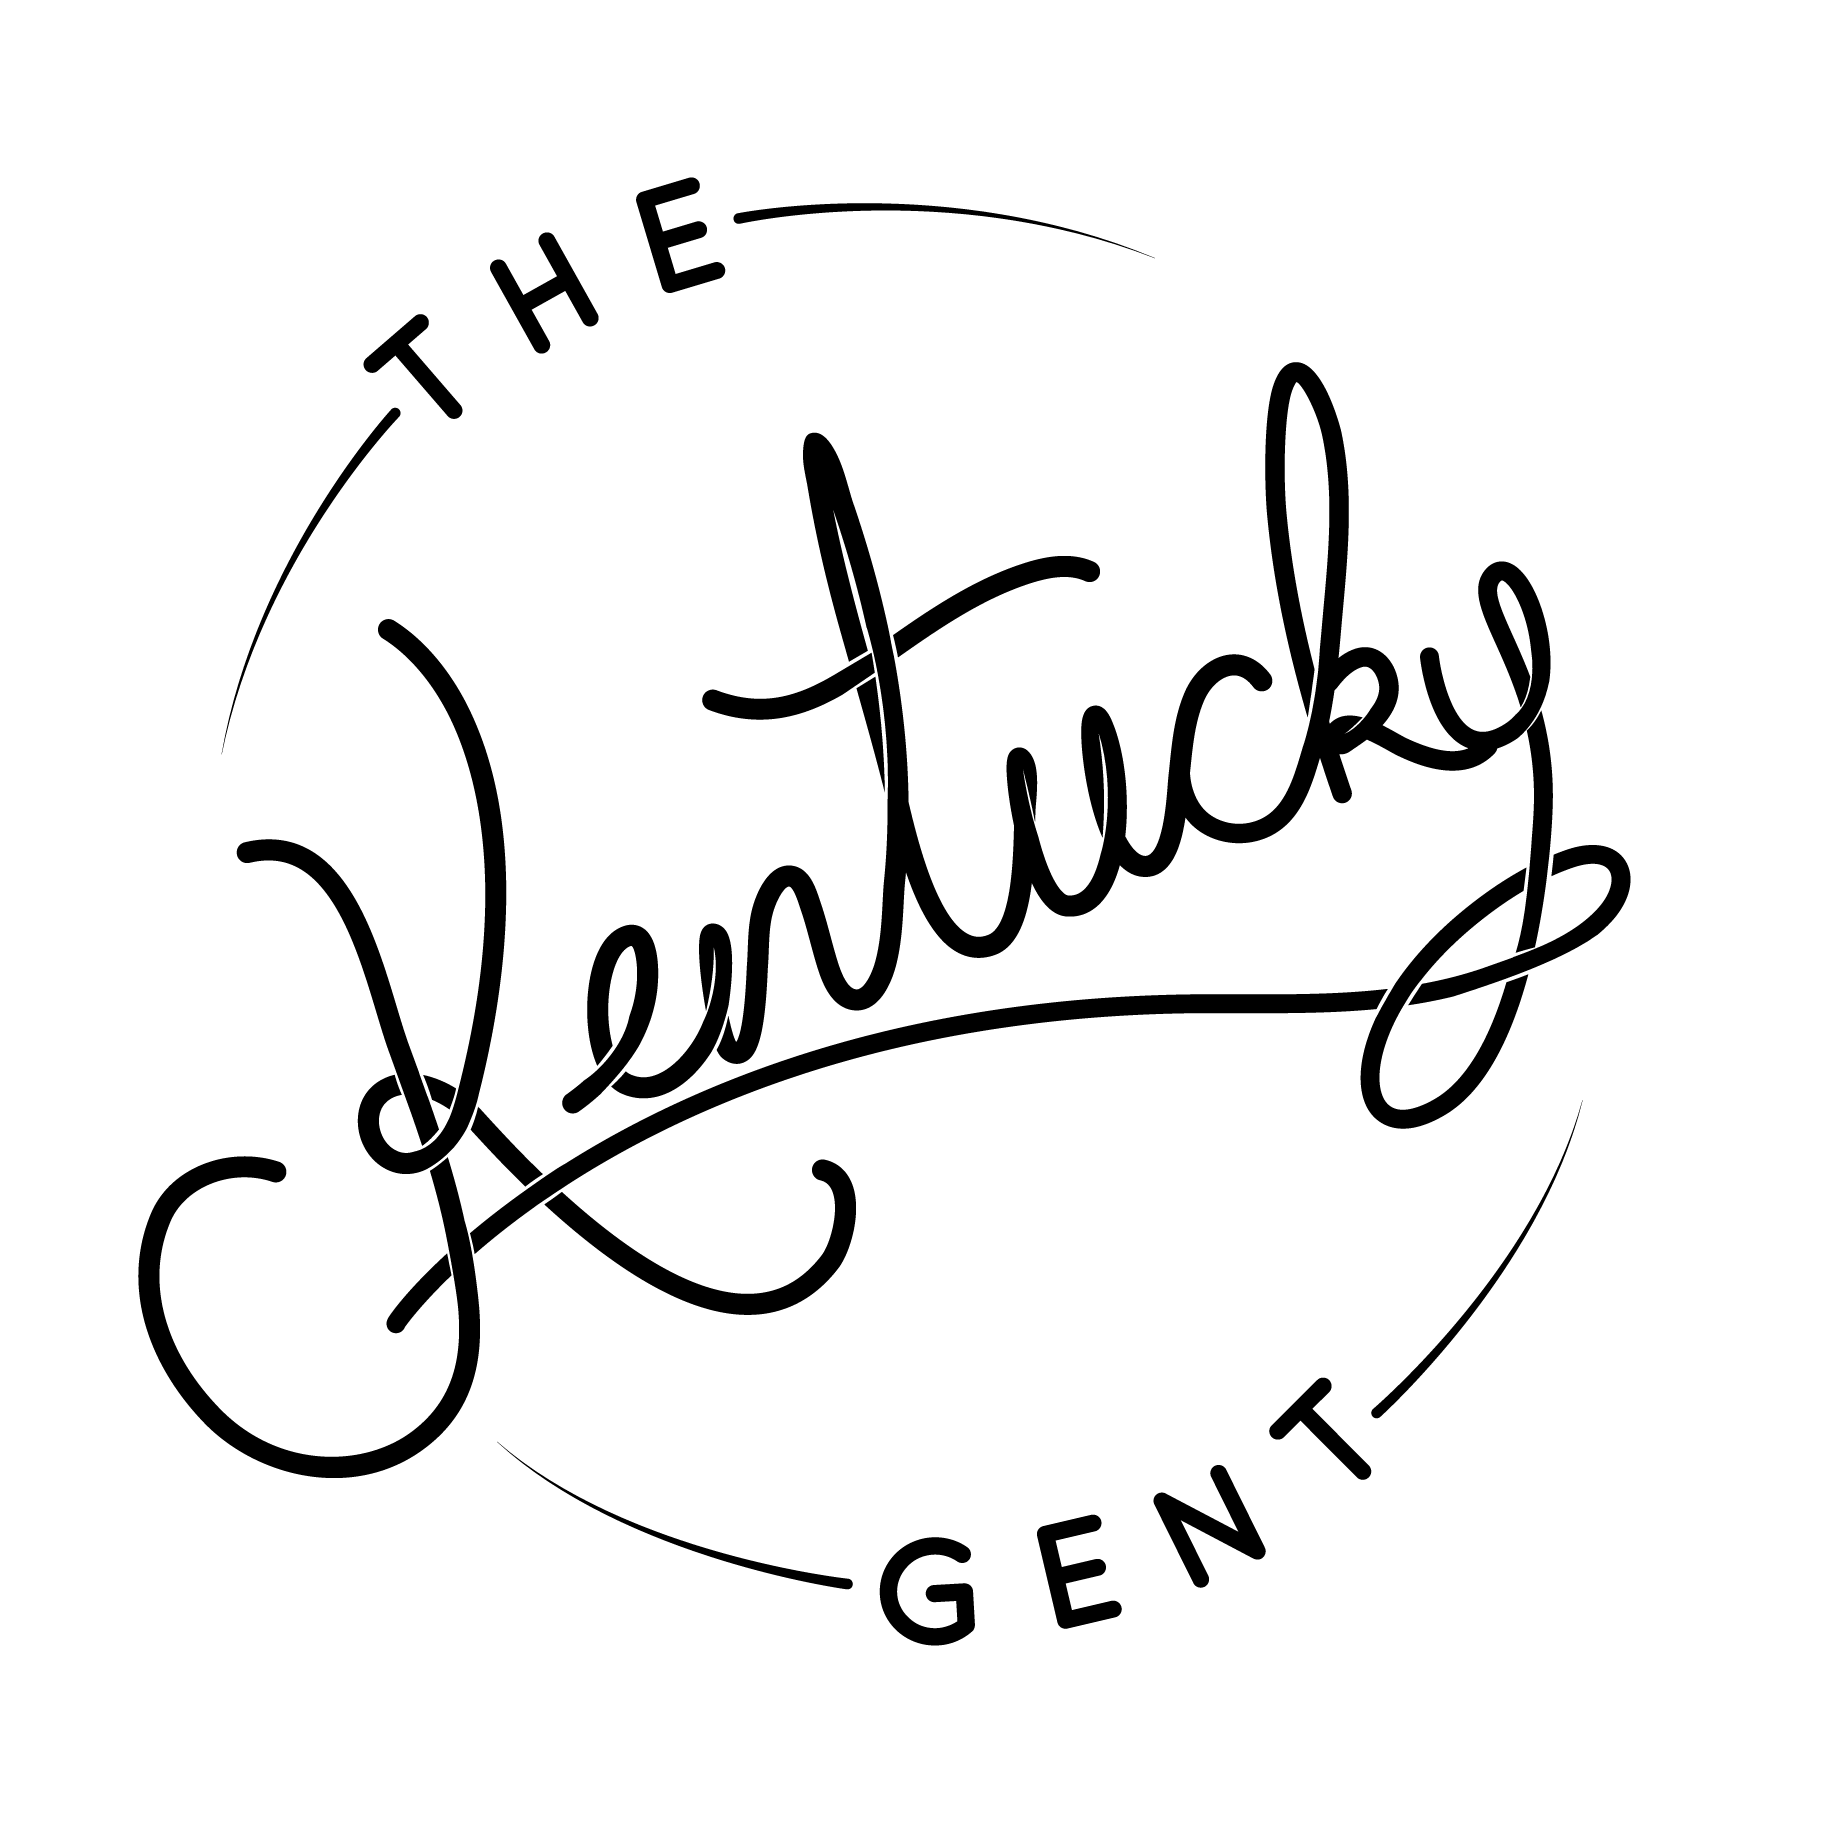 The Kentucky Gent